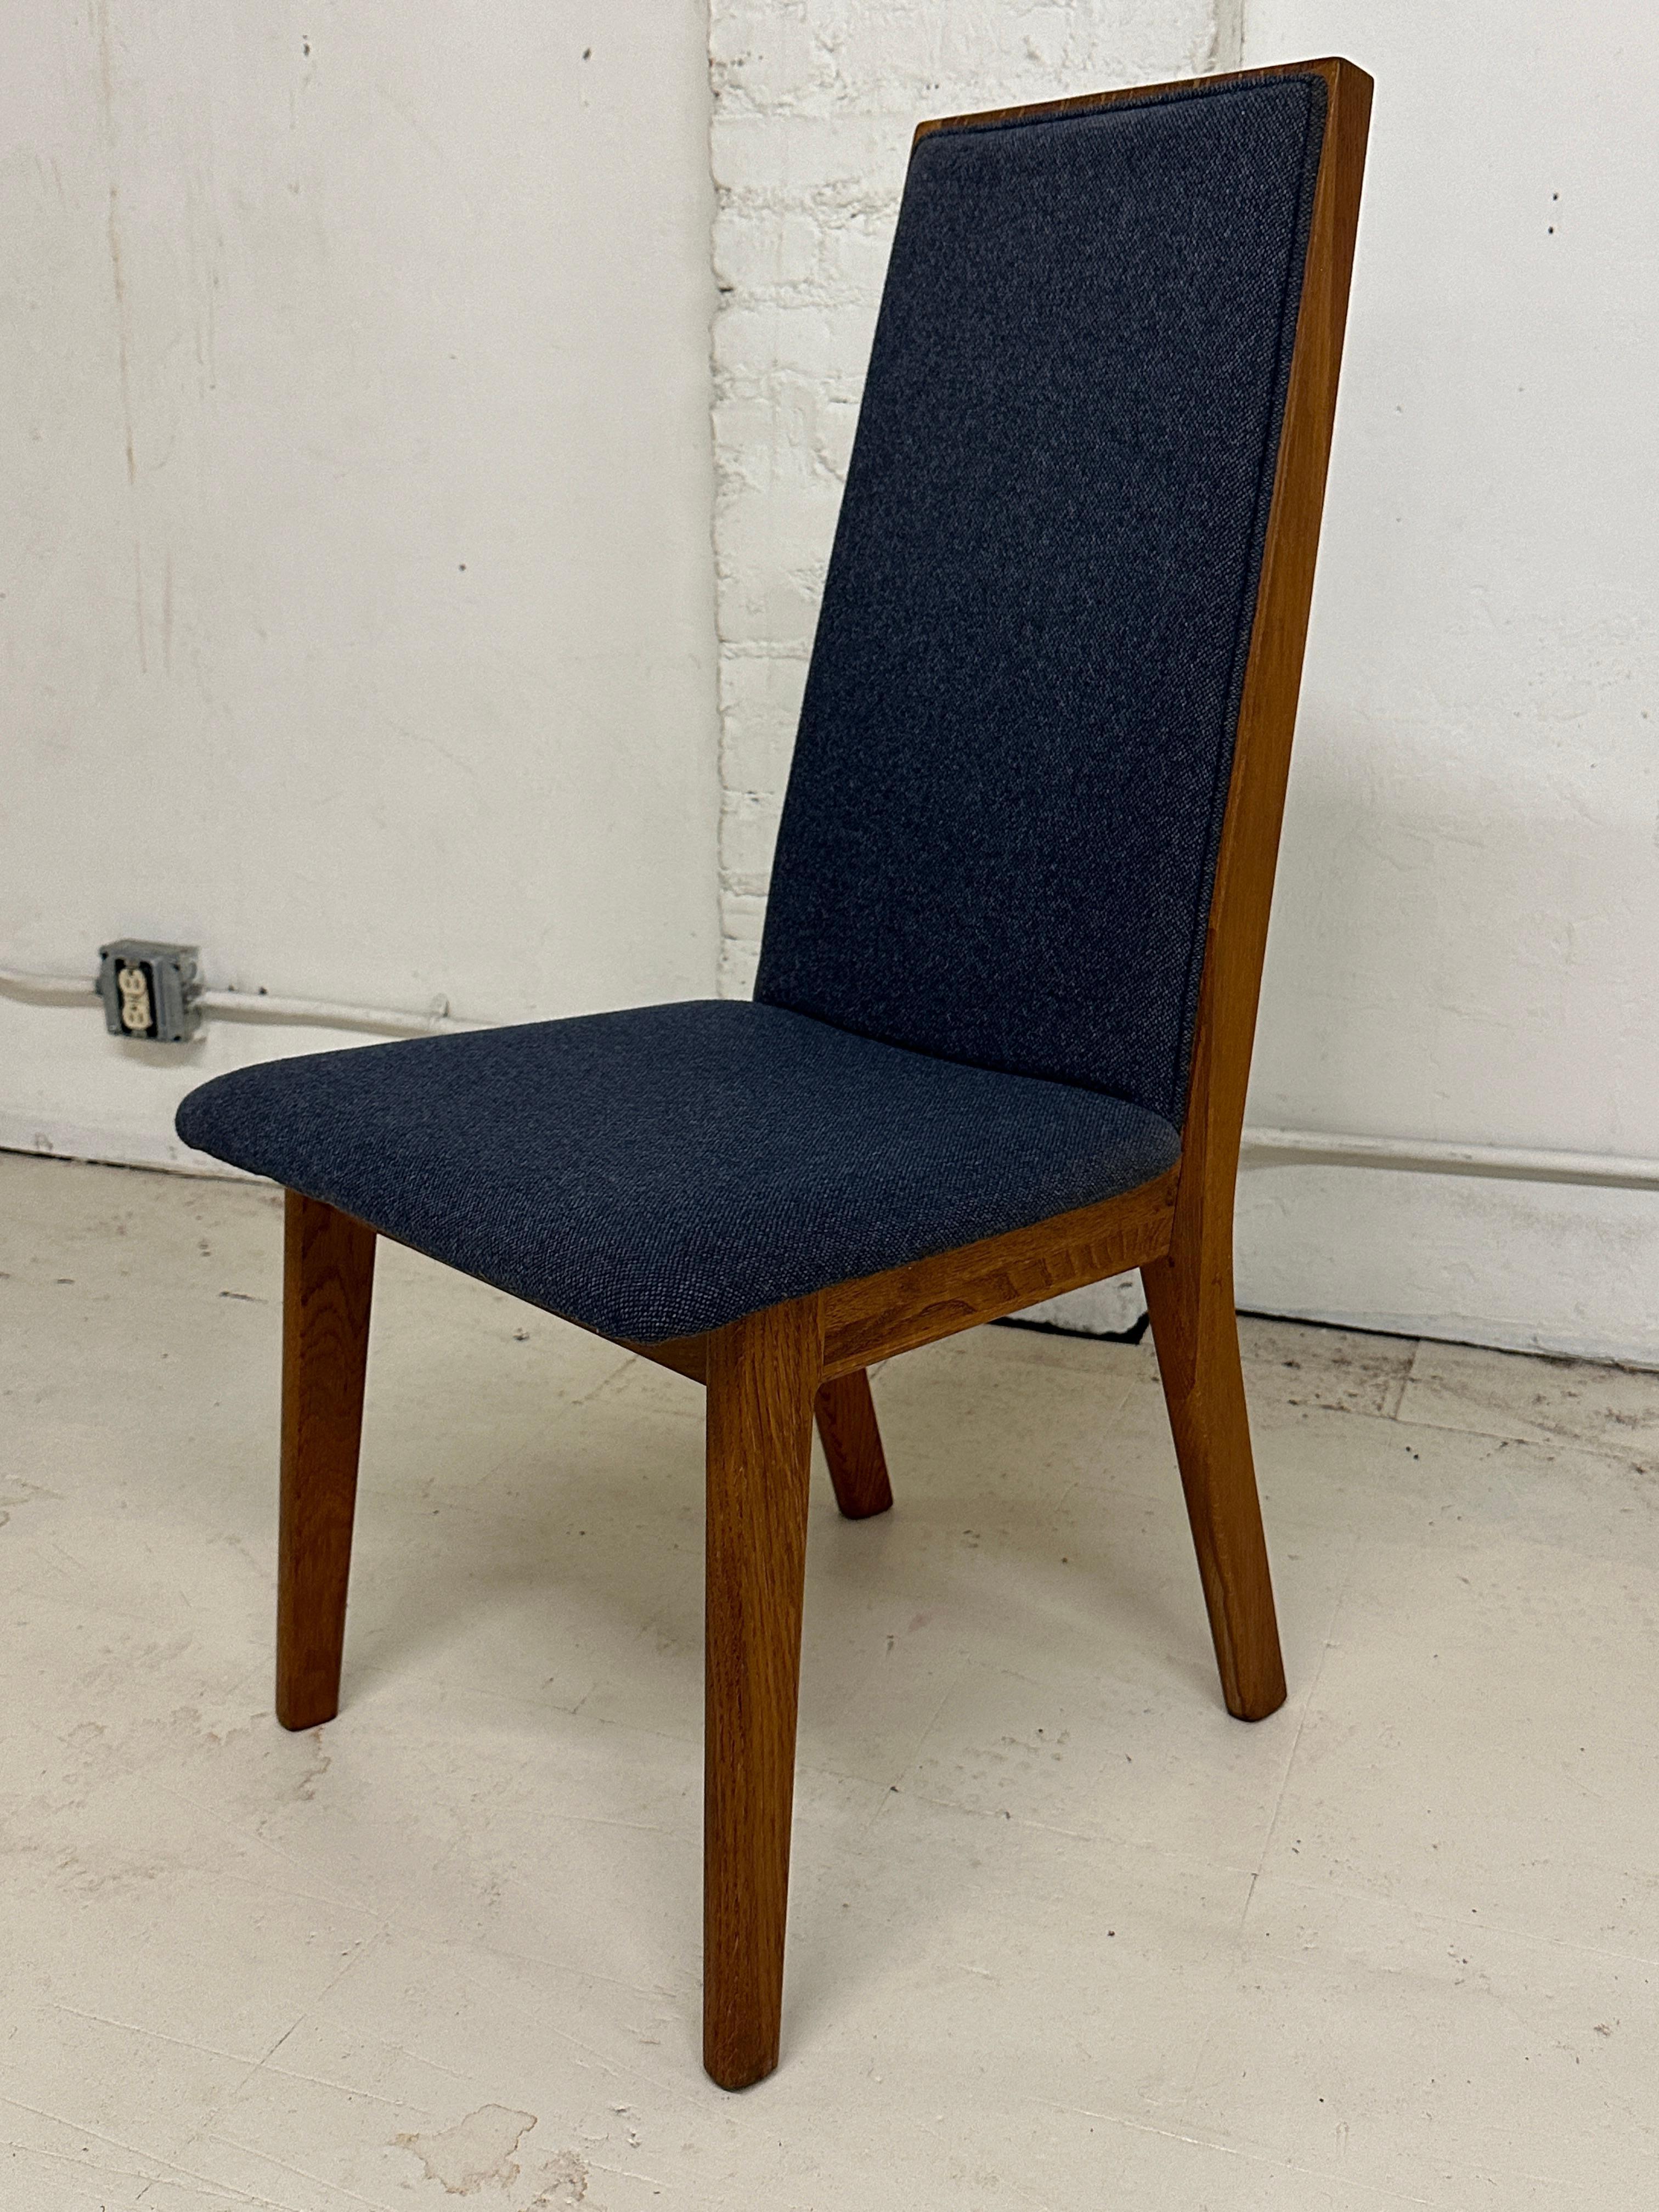 Dieses Set aus sechs dänischen Esszimmerstühlen wurde in den 1970er Jahren von dem dänischen Hersteller Dyrlund gefertigt. Sie verkörpern die Essenz der dänischen Ästhetik der Mitte des Jahrhunderts. 
Dyrlund, seit seiner Gründung 1960 ein